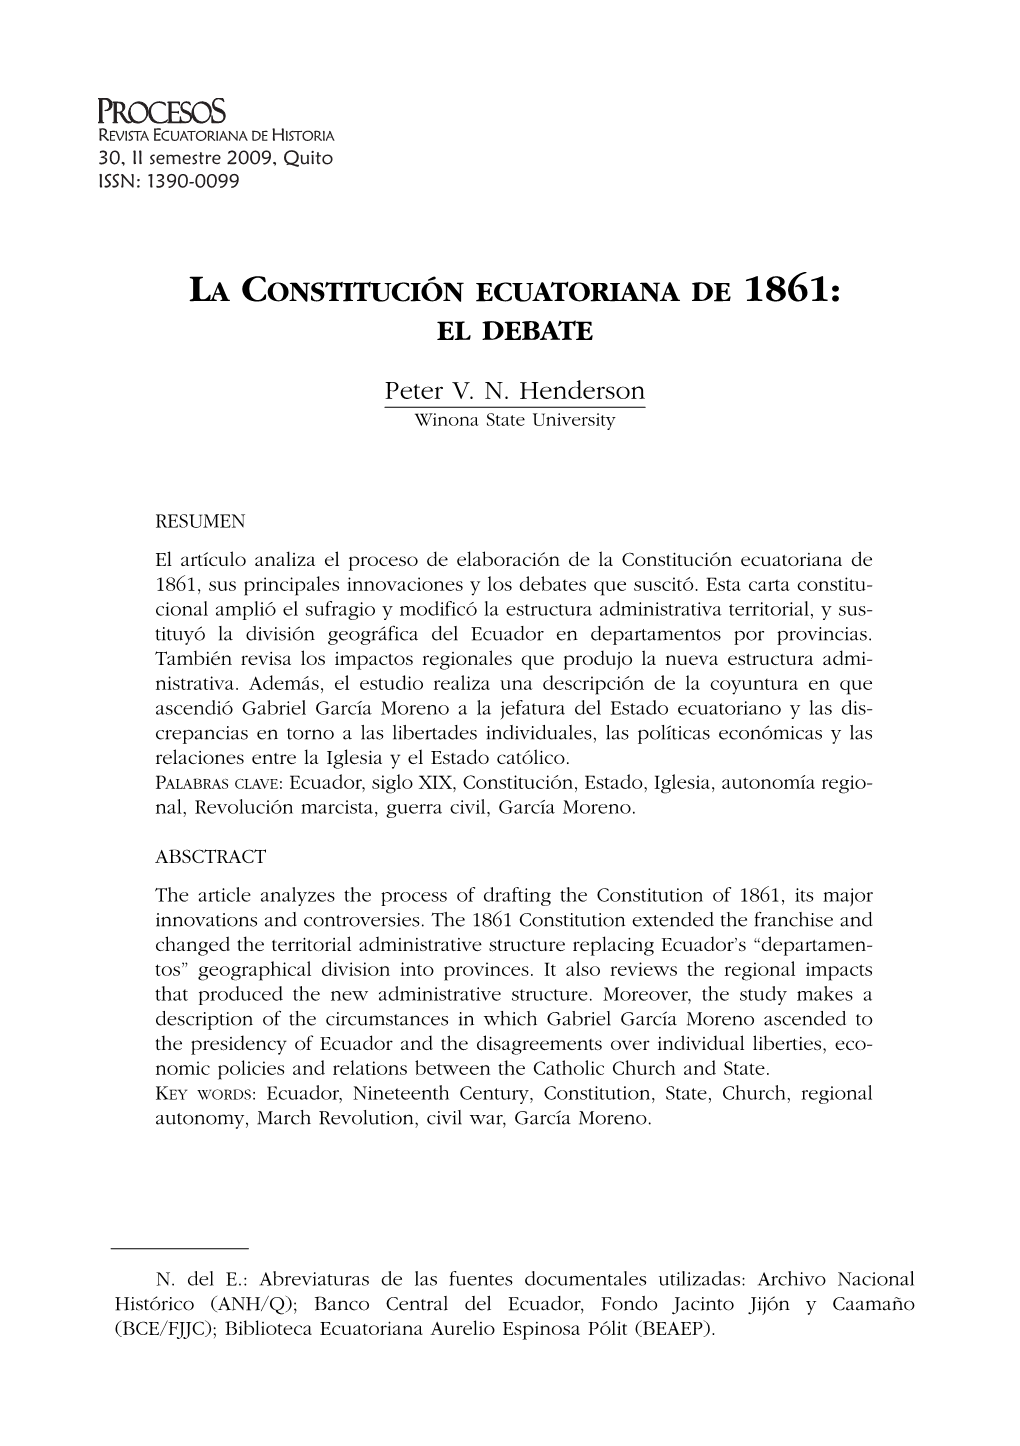 La Constitución Ecuatoriana De 1861: El Debate